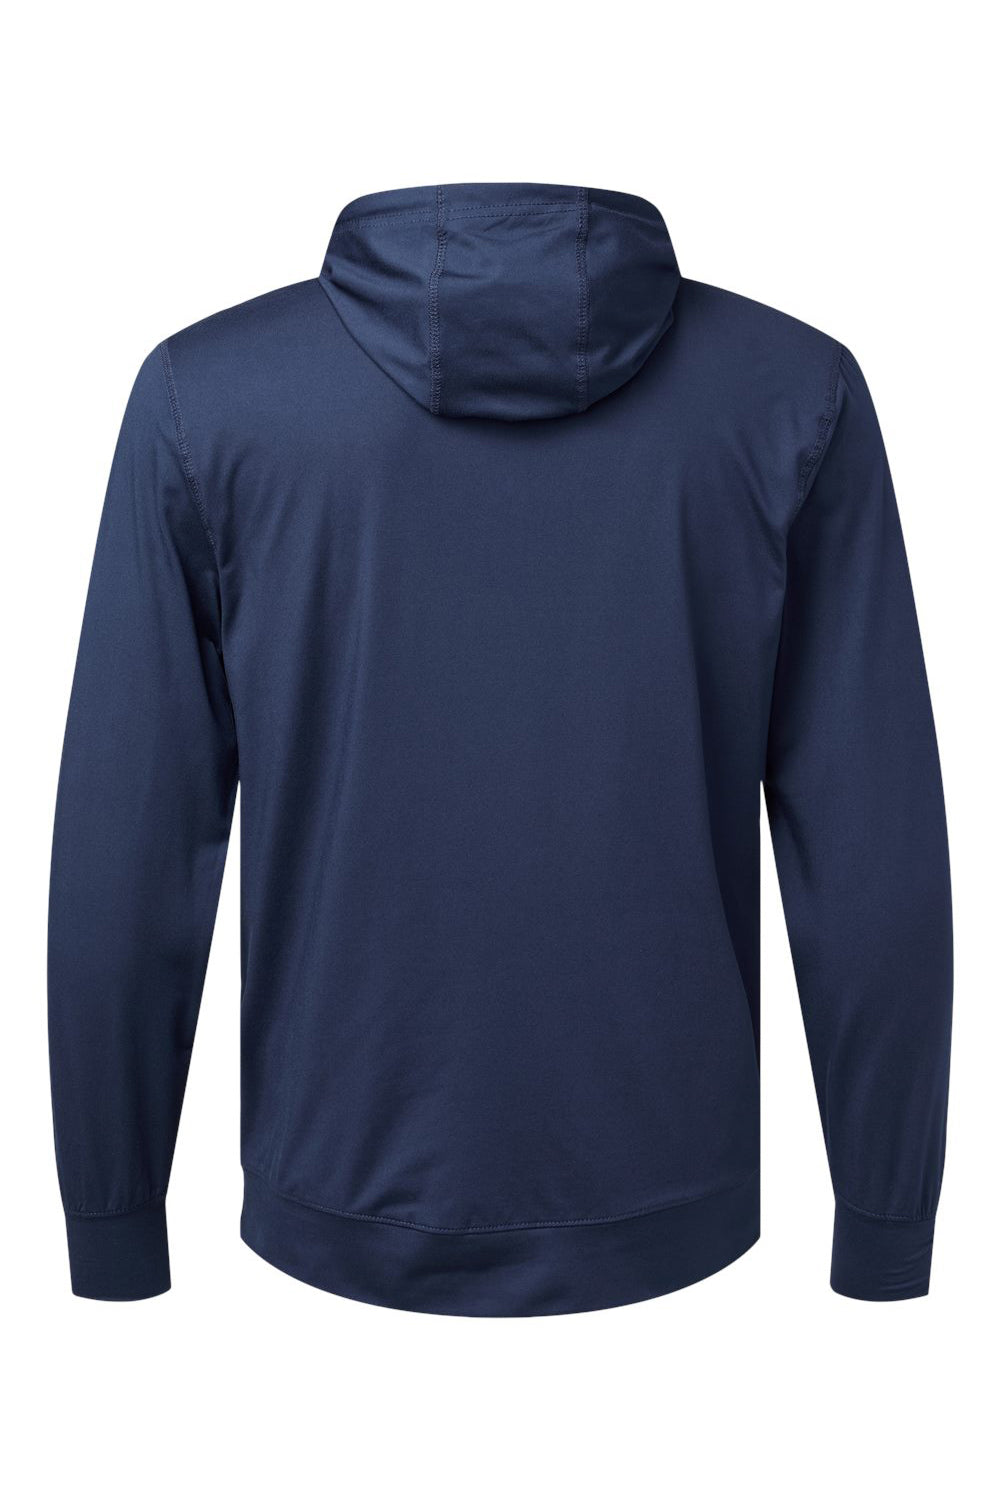 Holloway 222598 Mens Eco Revive Ventura Hooded Sweatshirt Hoodie Navy Blue Flat Back